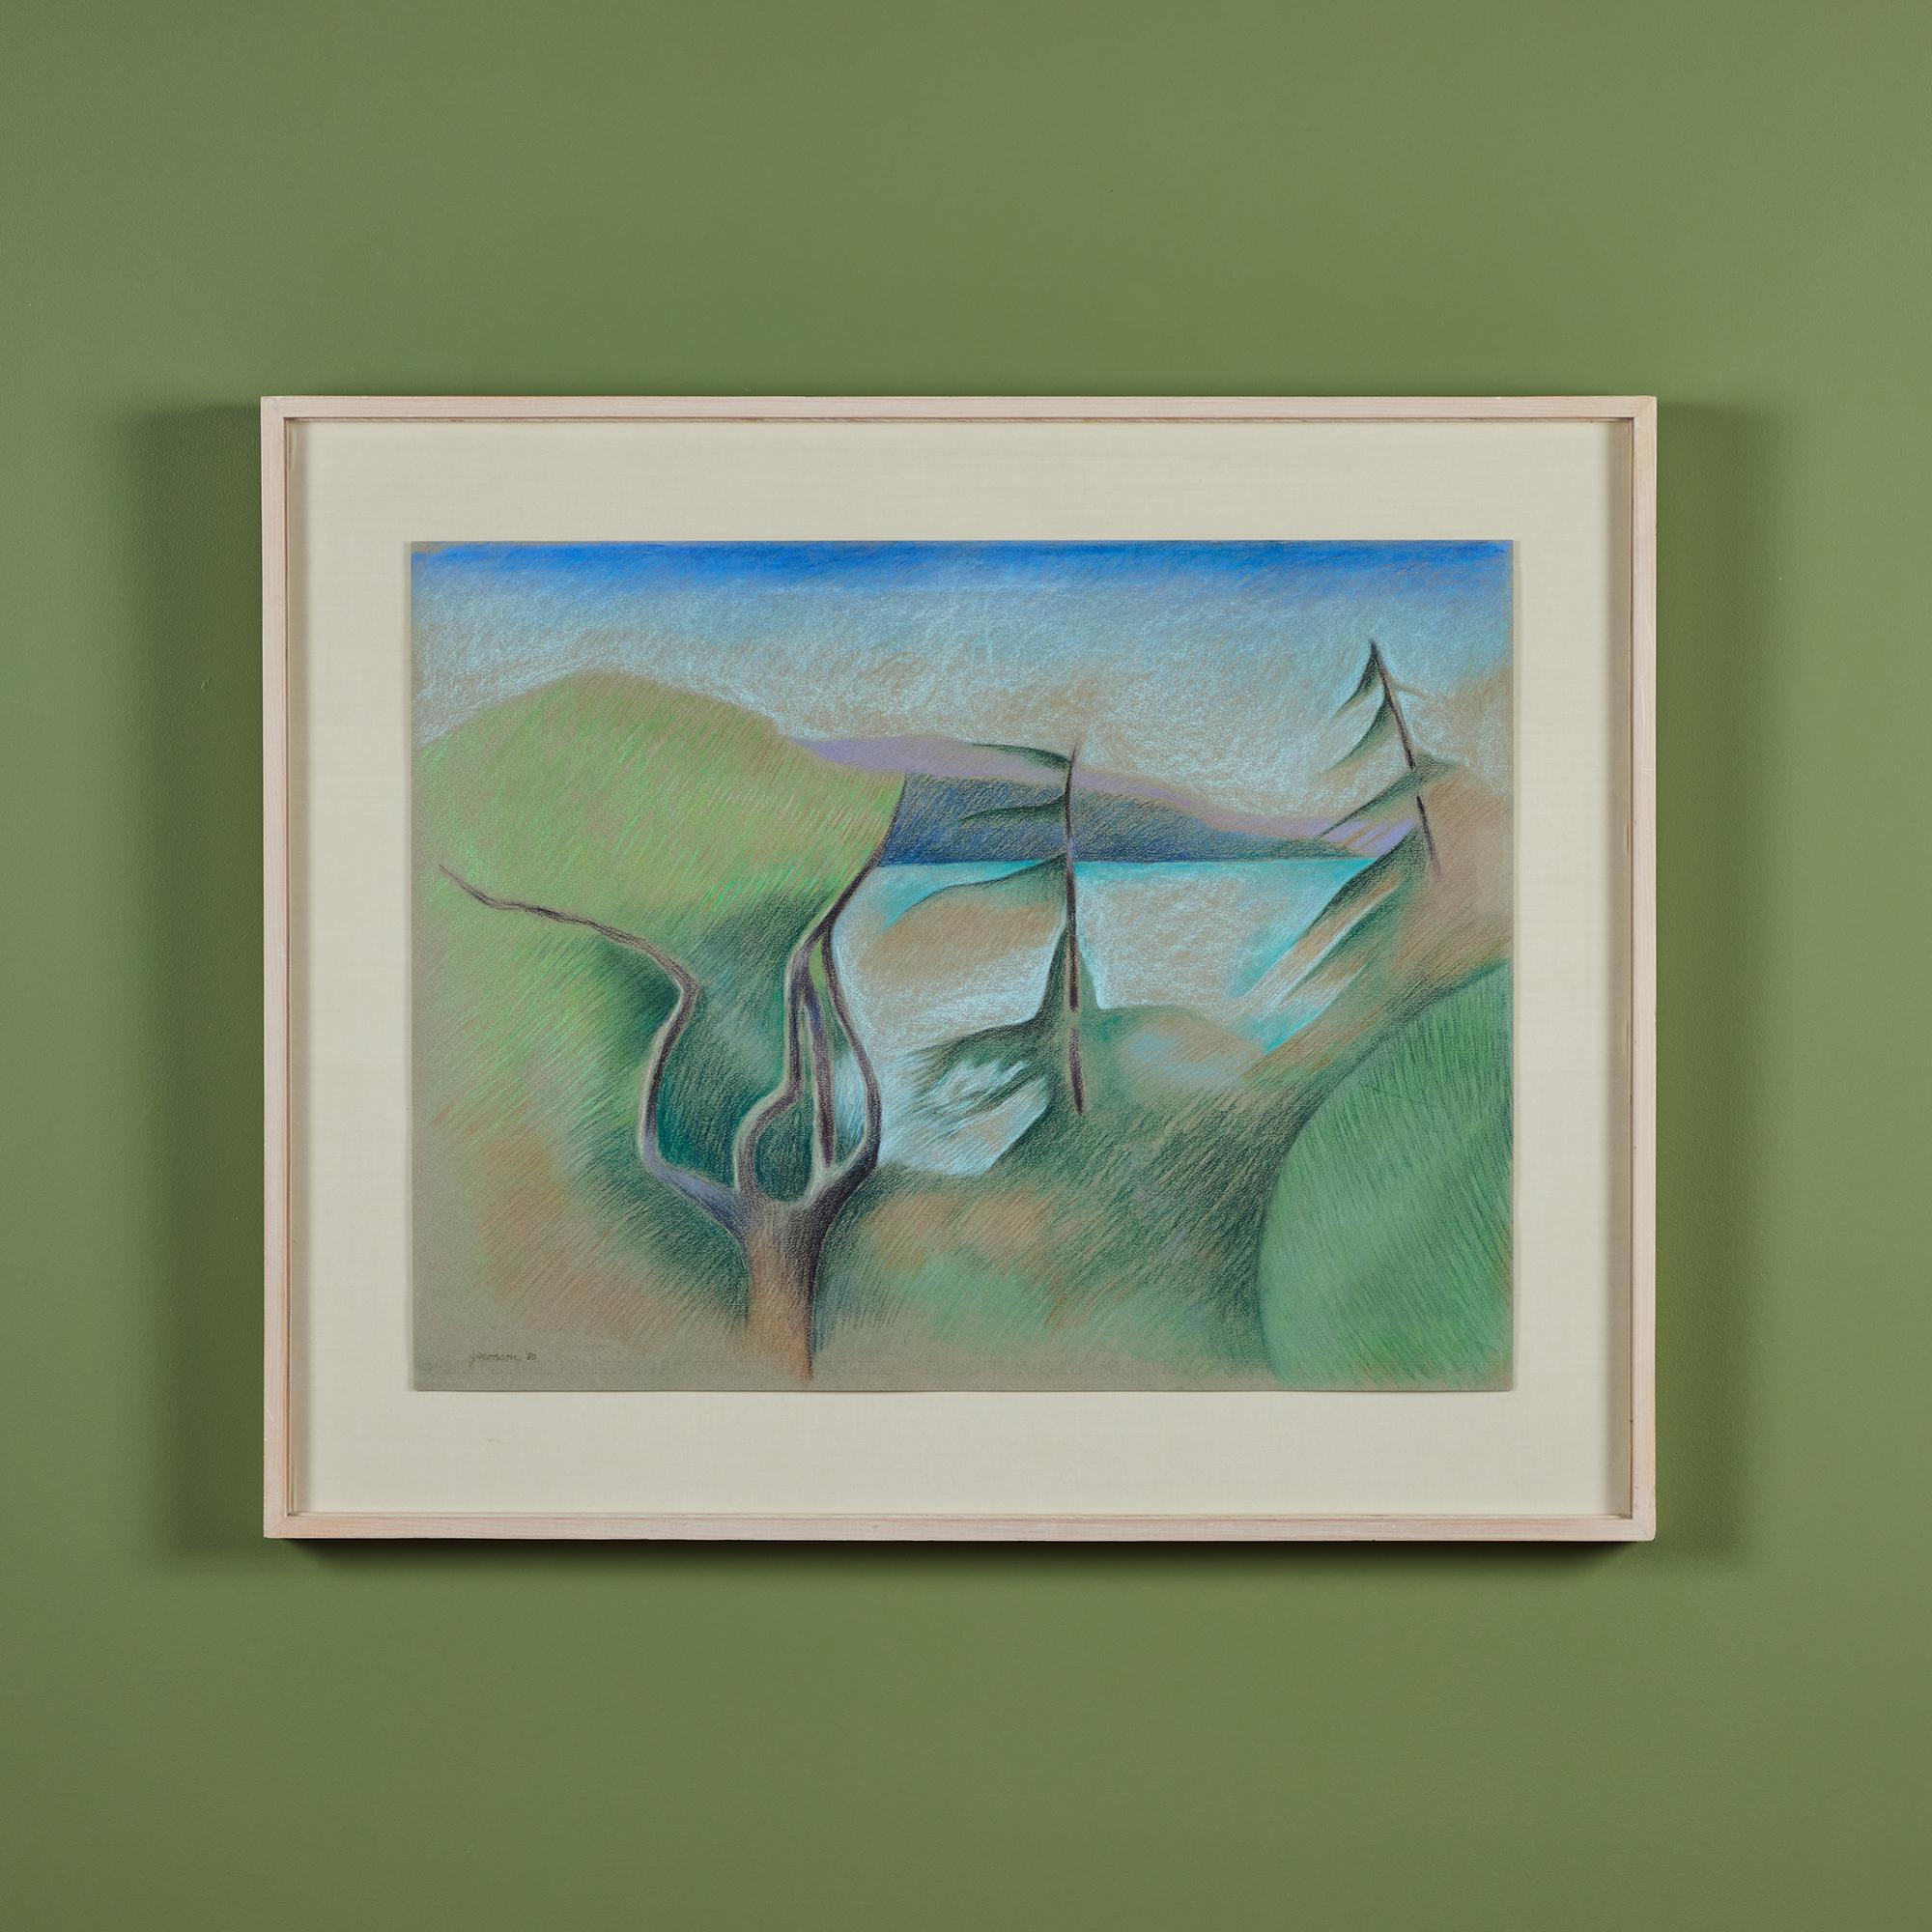 Peinture au pastel encadrée de l'artiste américaine Linda Jacobson, c.C. 1980. L'œuvre d'art paysagère représente des arbres, de l'eau et des collines verdoyantes. L'ambiance des œuvres de Jacobson est souvent paisible et reflète son amour de la